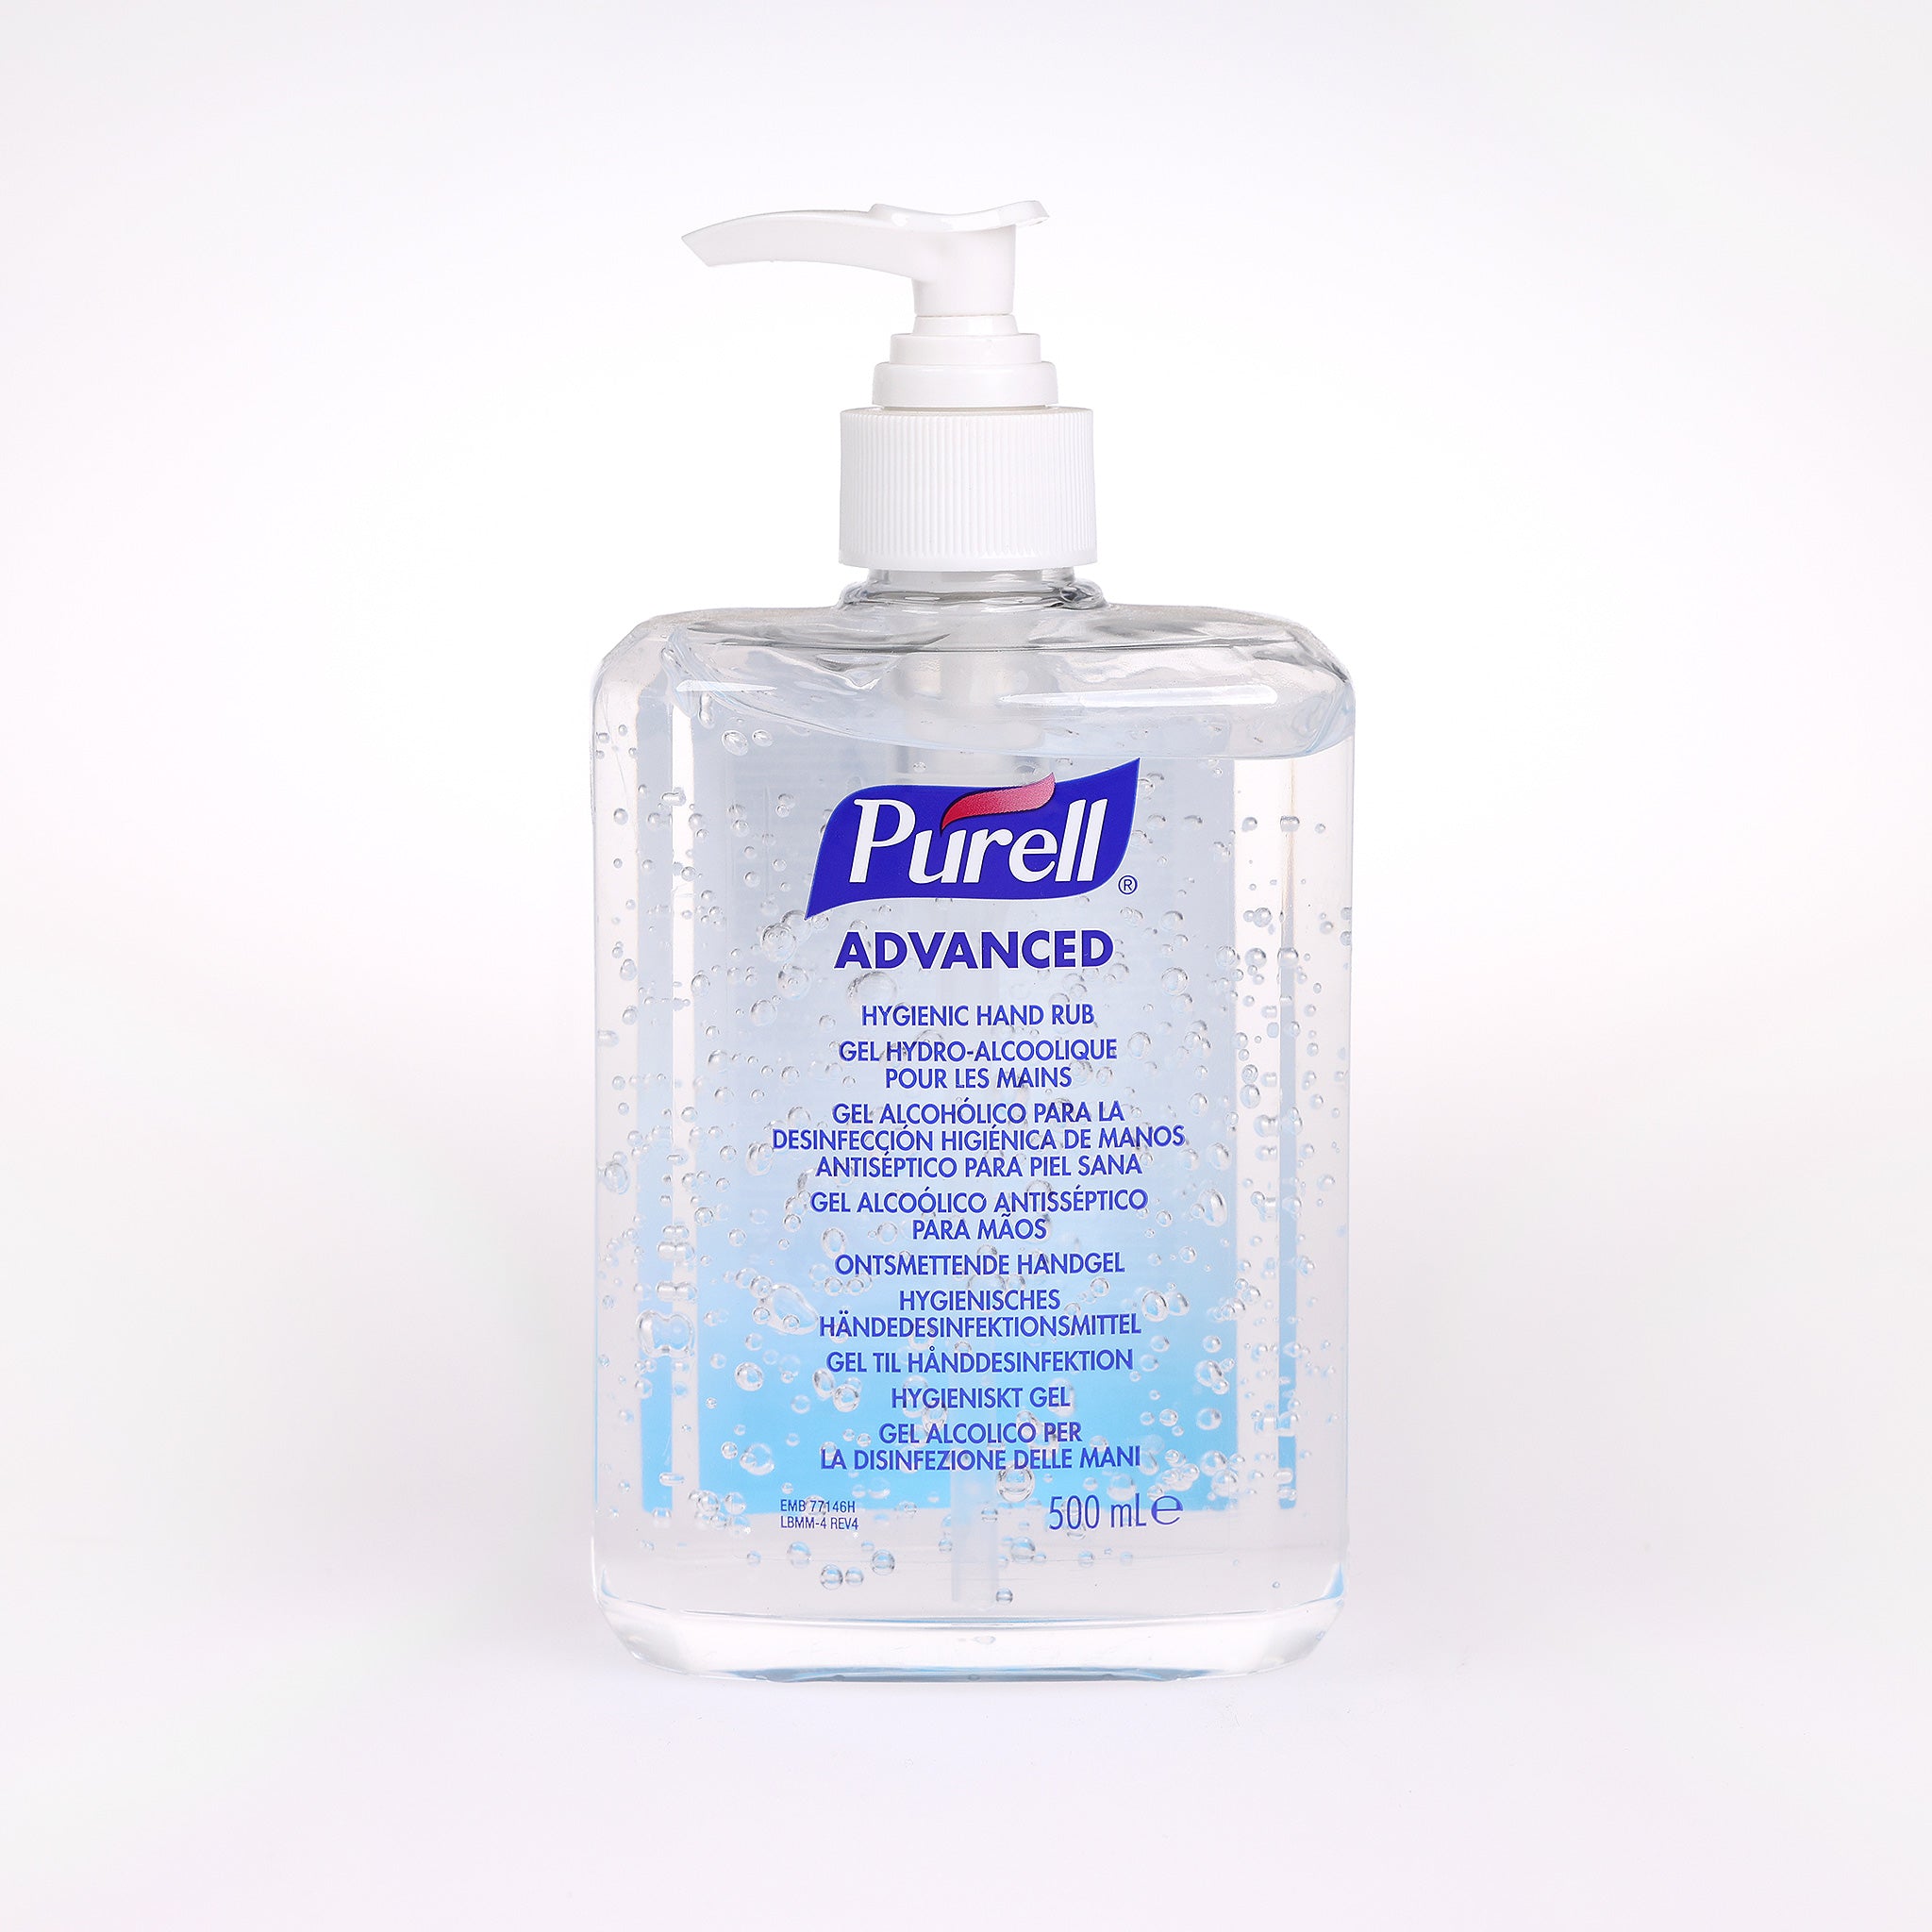 Hånddesinfektion Purell Advanced Gel med pumpe beskytter effektivt mod bakterier. Kommer i en praktisk 500 ml. pumpeflaske.